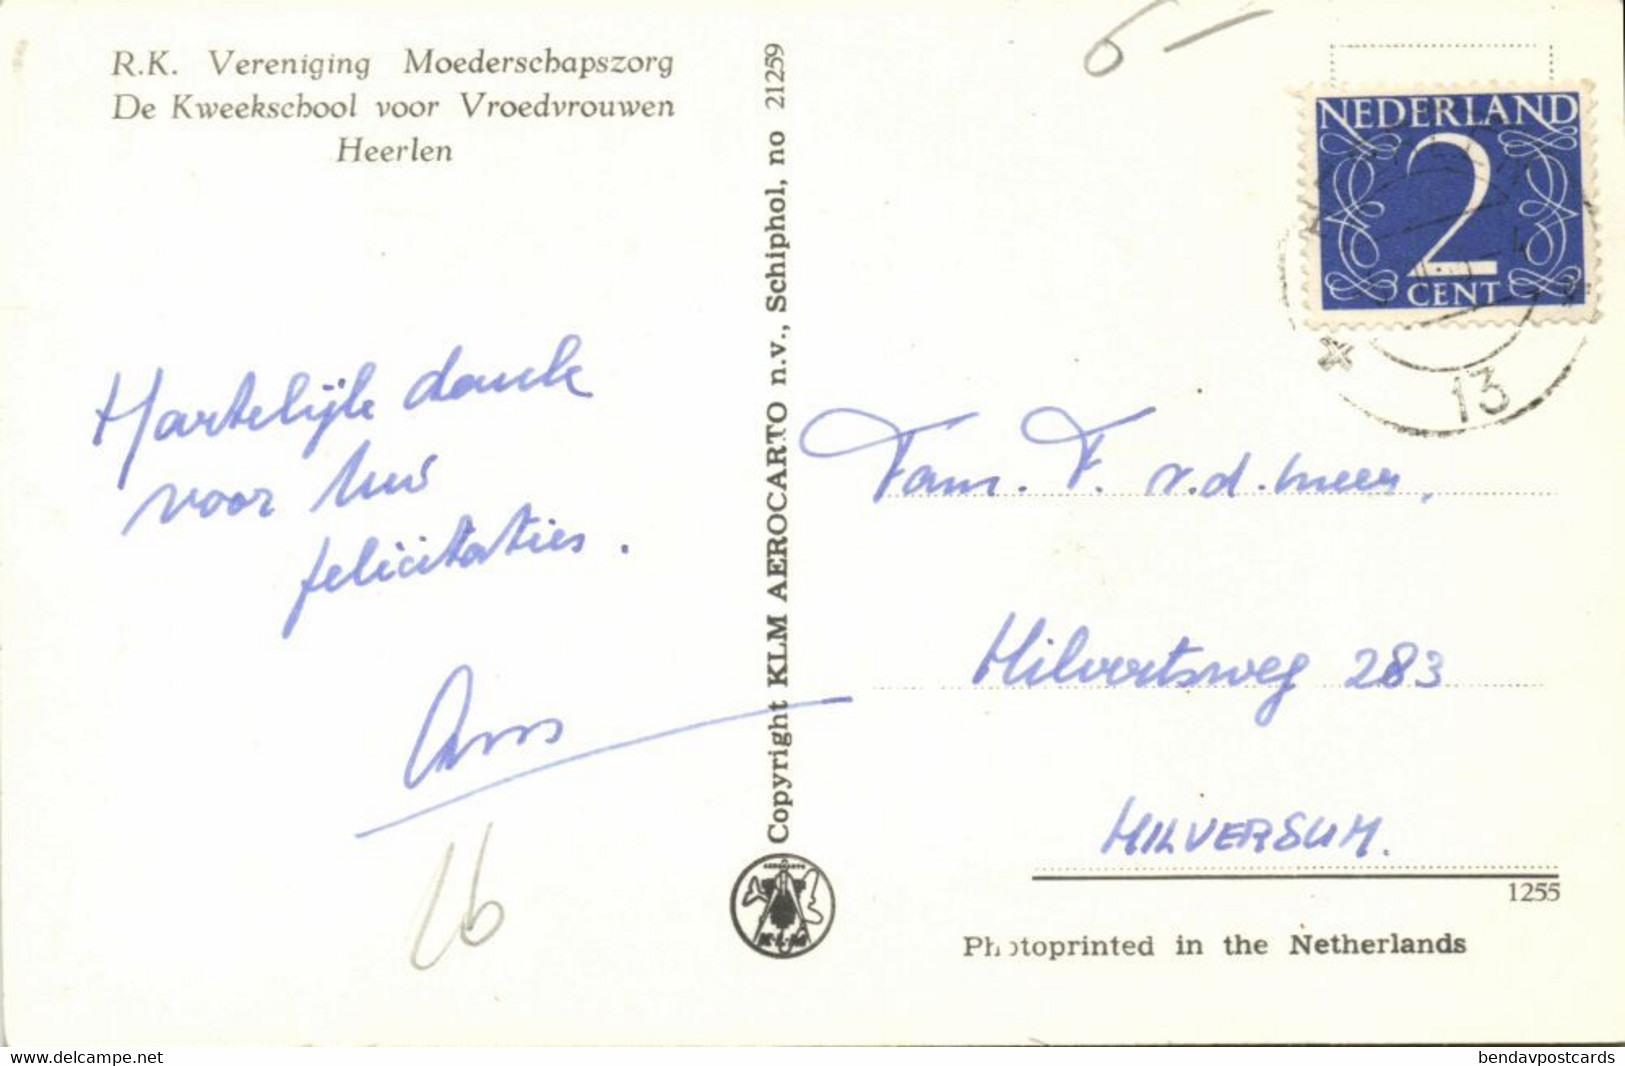 Nederland, HEERLEN, R.K. Vereniging Moederschapszorg (1950s) KLM Ansichtkaart - Heerlen